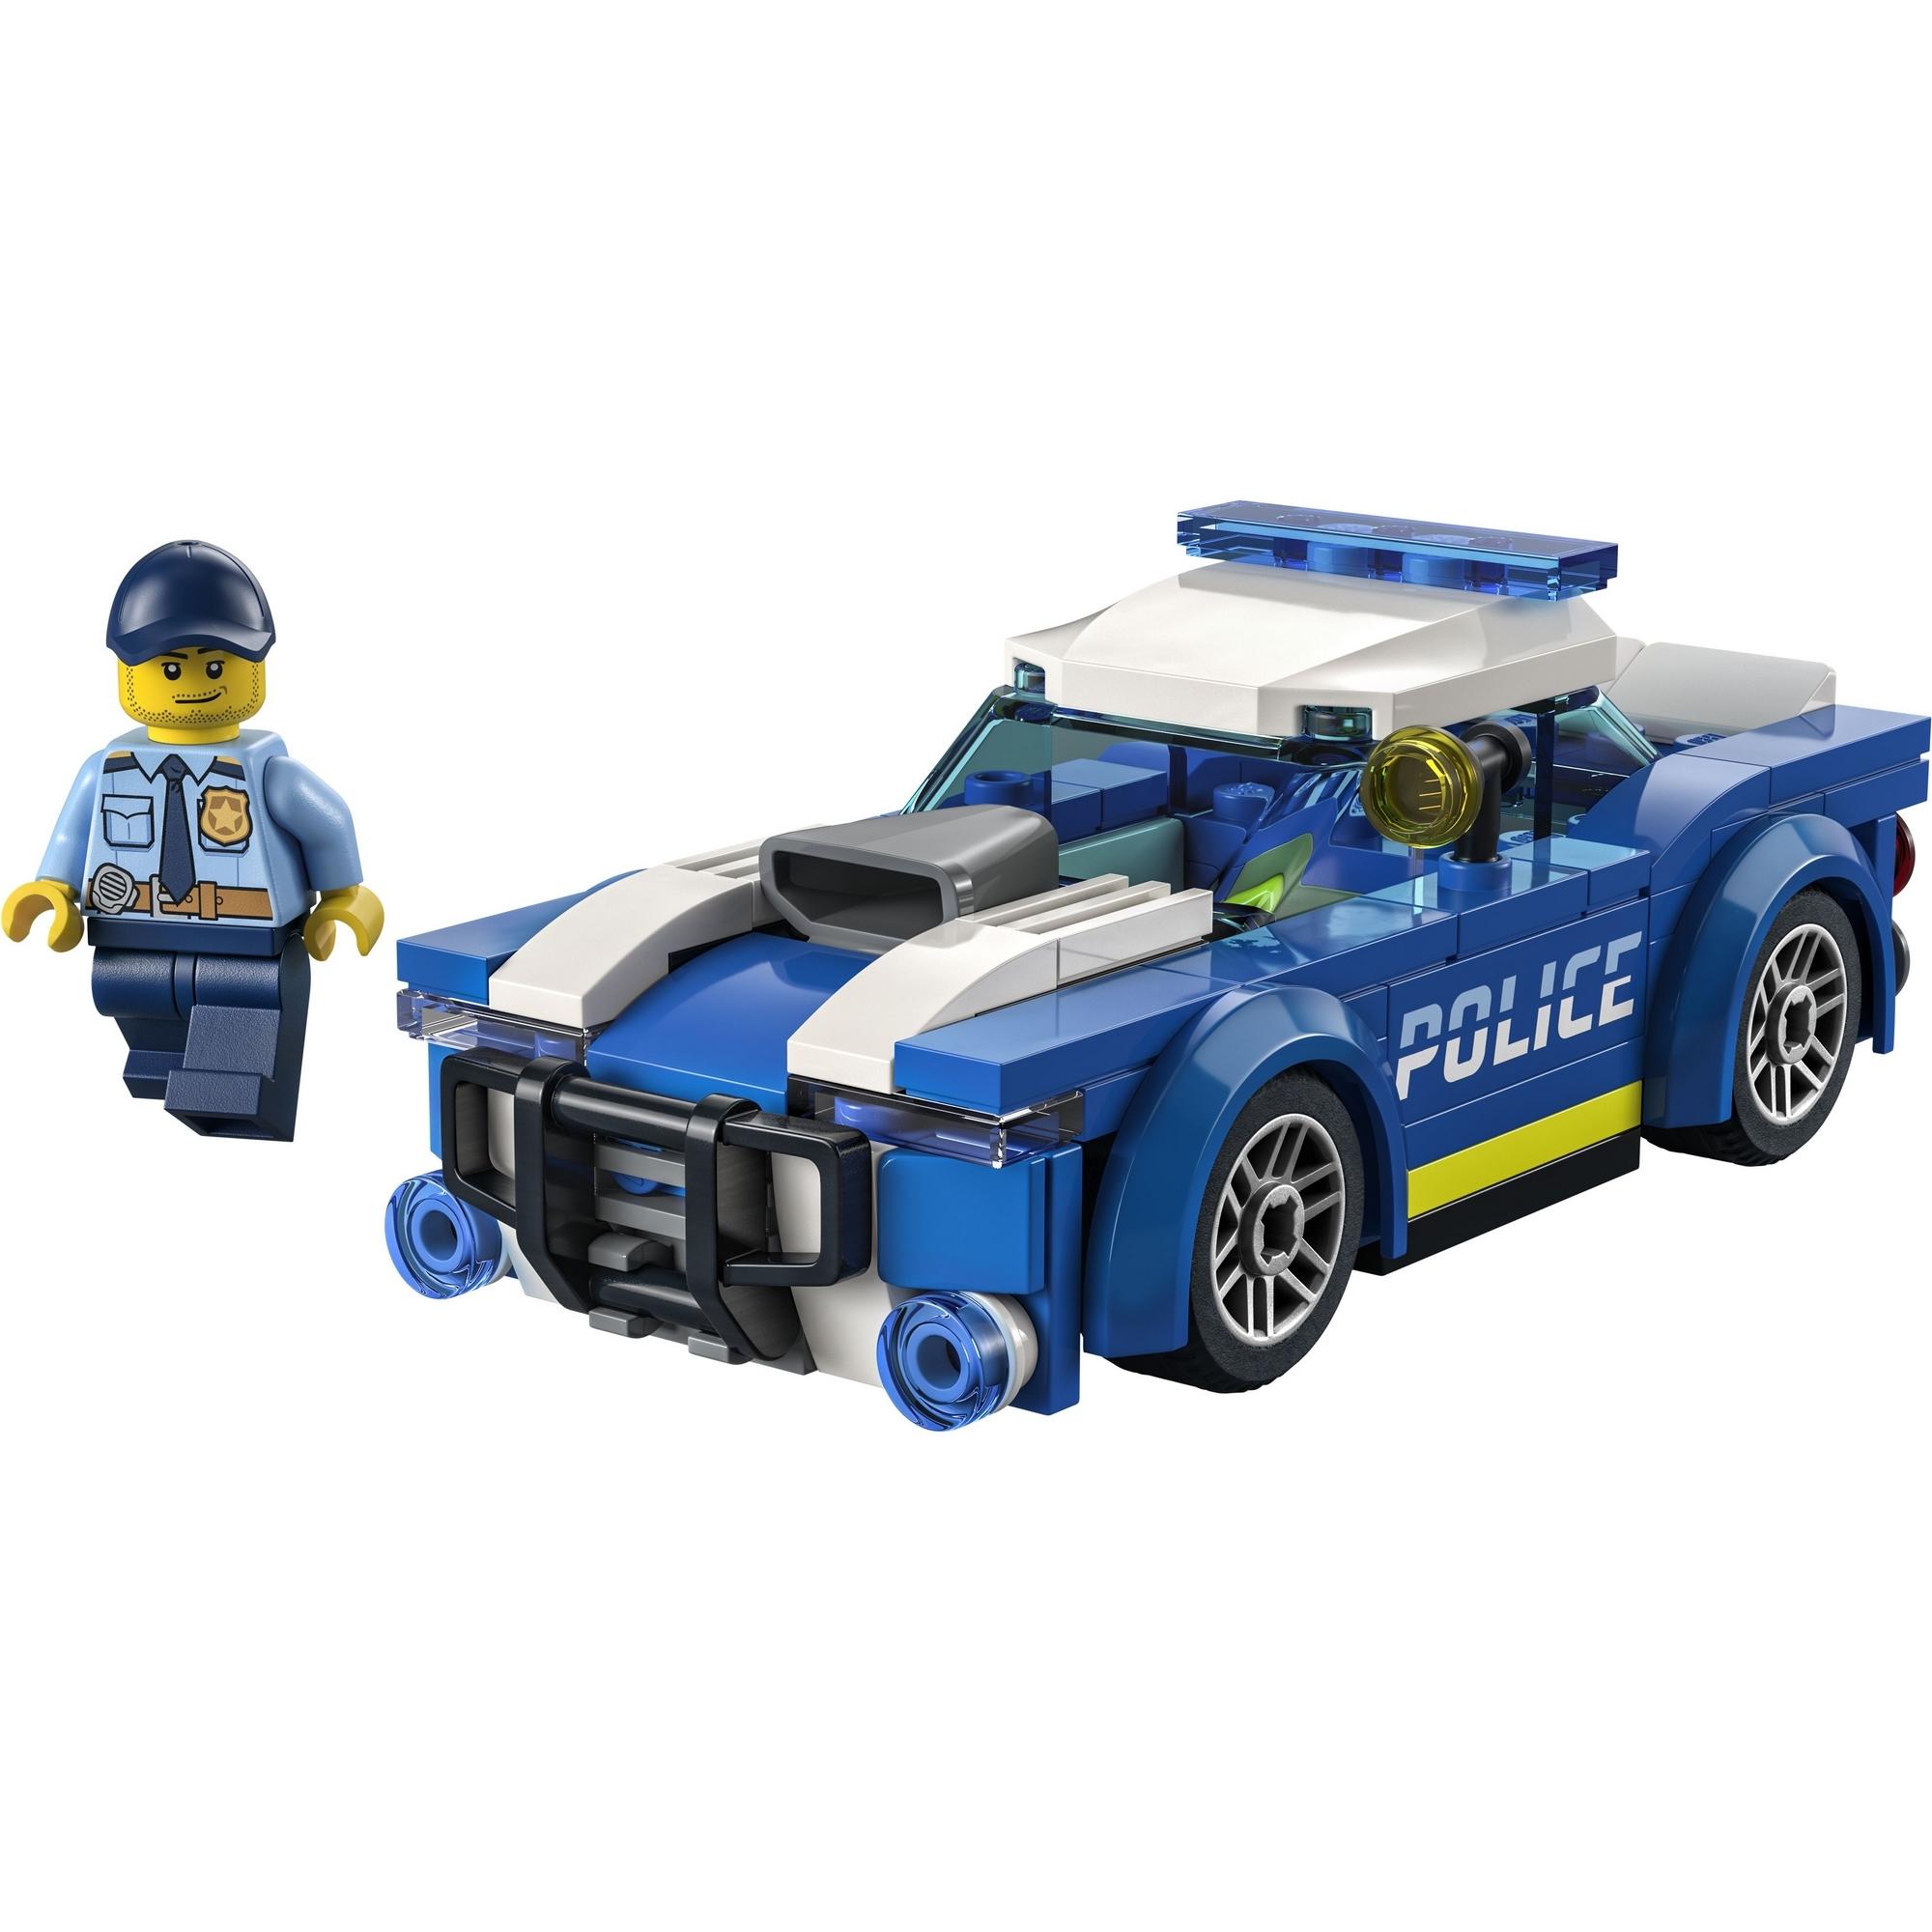 LEGO City 60312 Xe cảnh sát (94 chi tiết)